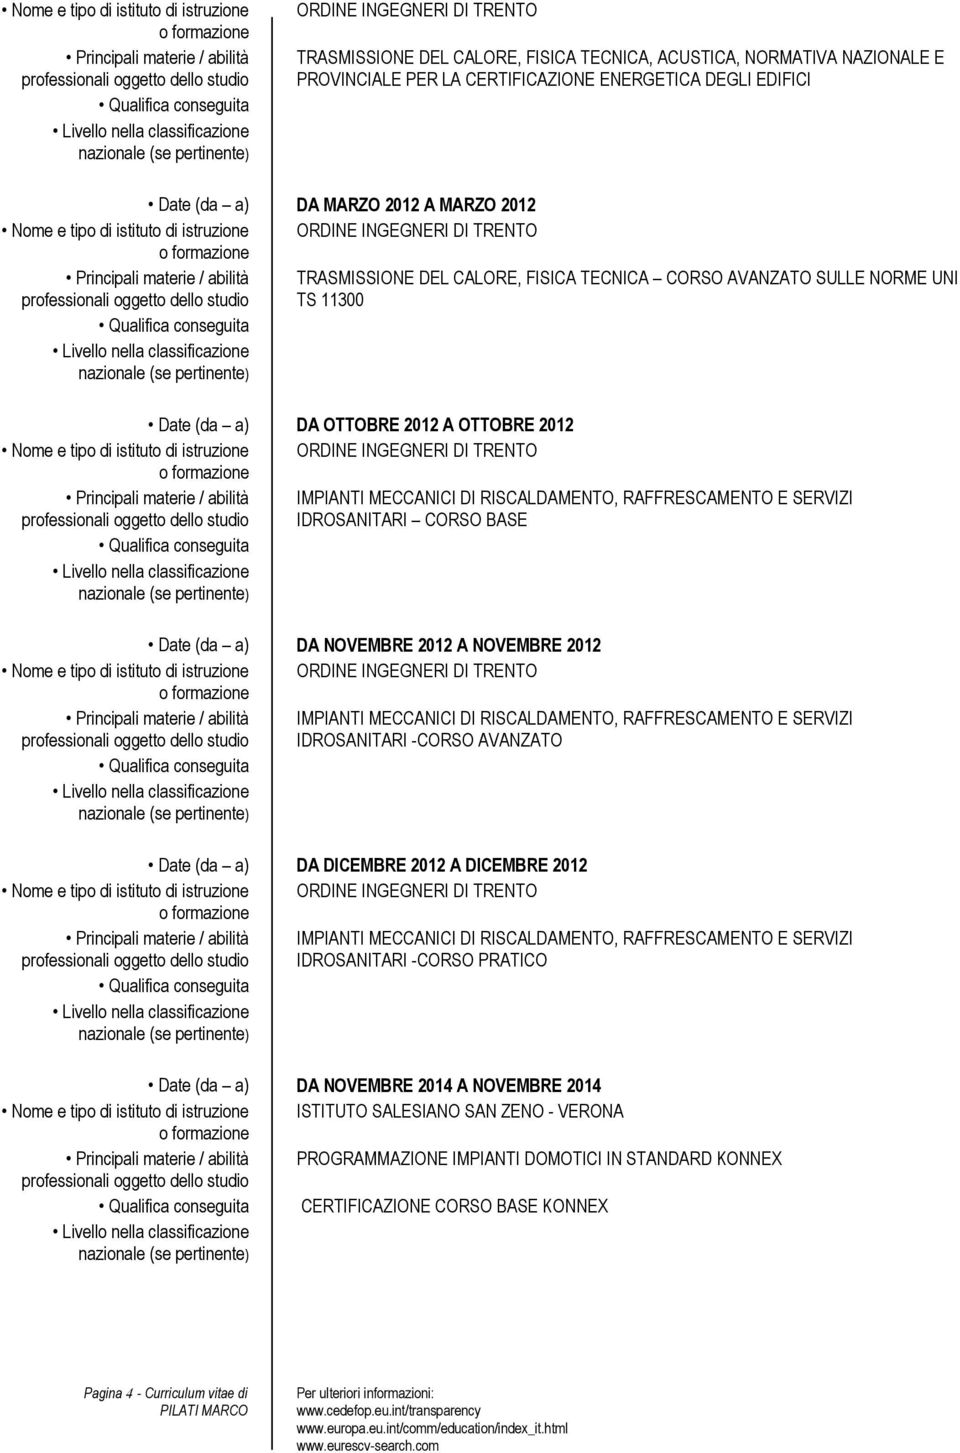 DA OTTOBRE 2012 A OTTOBRE 2012 Principali materie / abilità IMPIANTI MECCANICI DI RISCALDAMENTO, RAFFRESCAMENTO E SERVIZI IDROSANITARI CORSO BASE Date (da a) DA NOVEMBRE 2012 A NOVEMBRE 2012